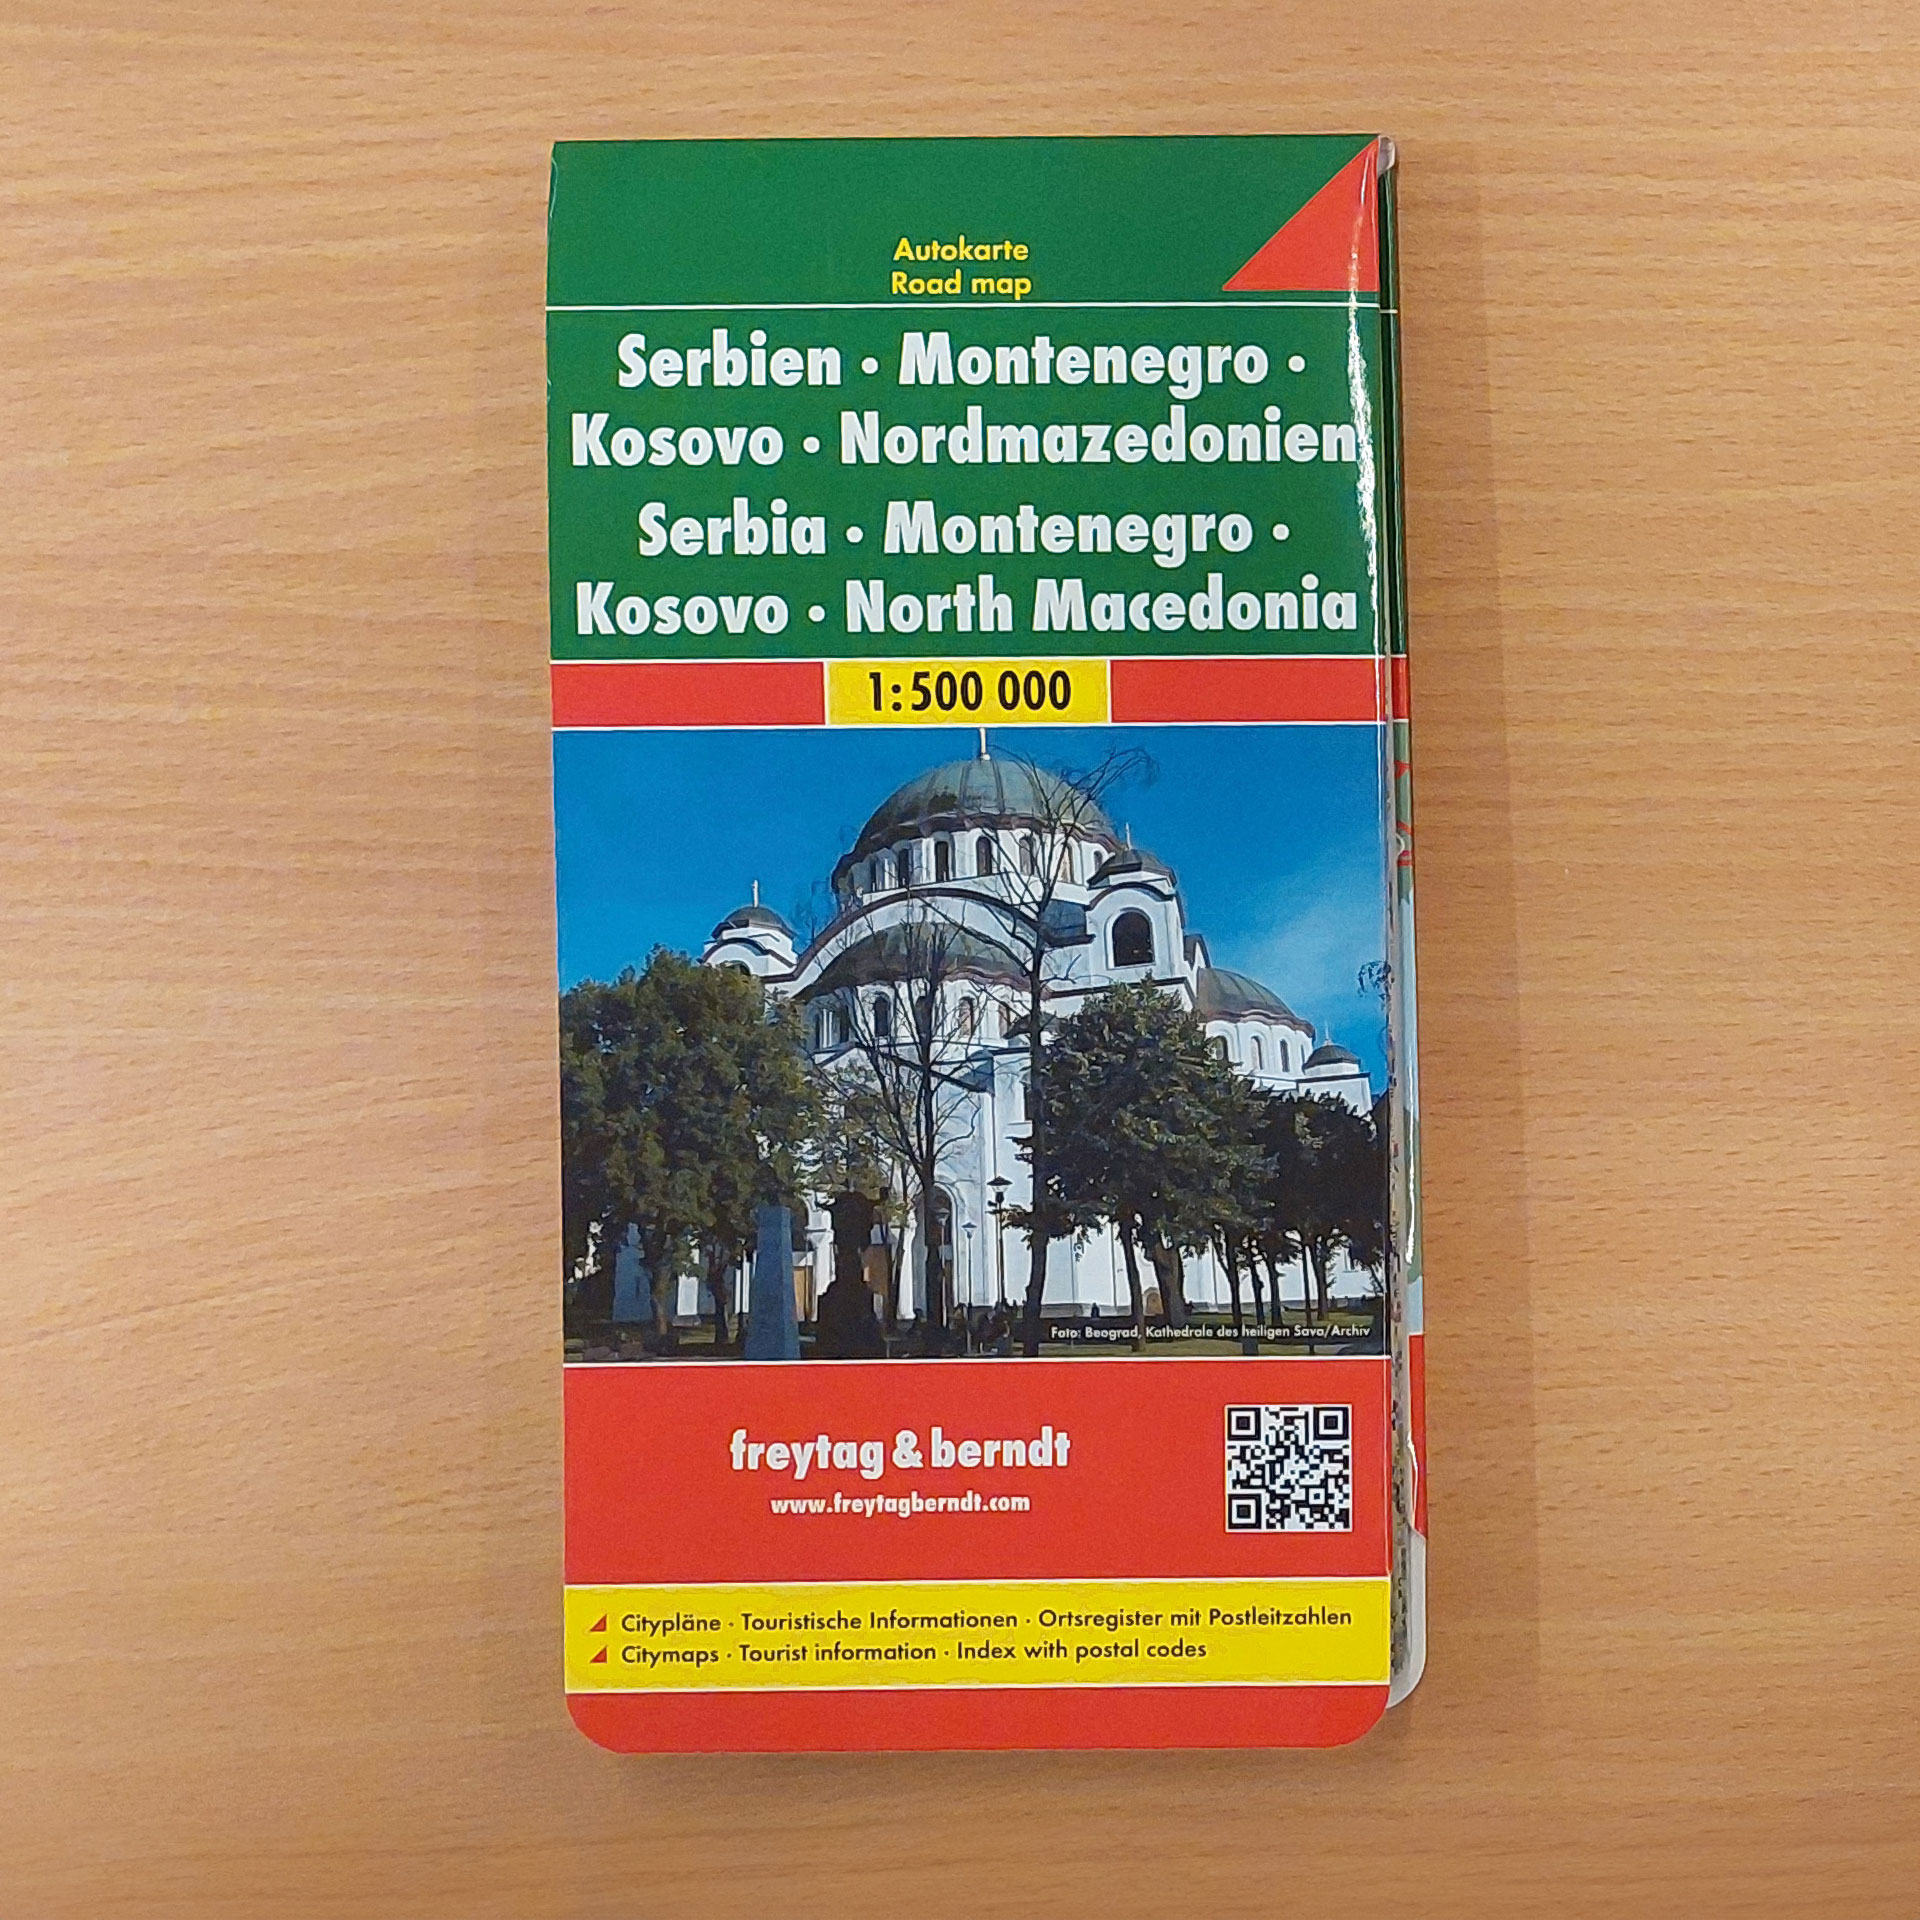 Reisekarte freytag&berdt Serbien Montenegro Kosovo Mazedonien